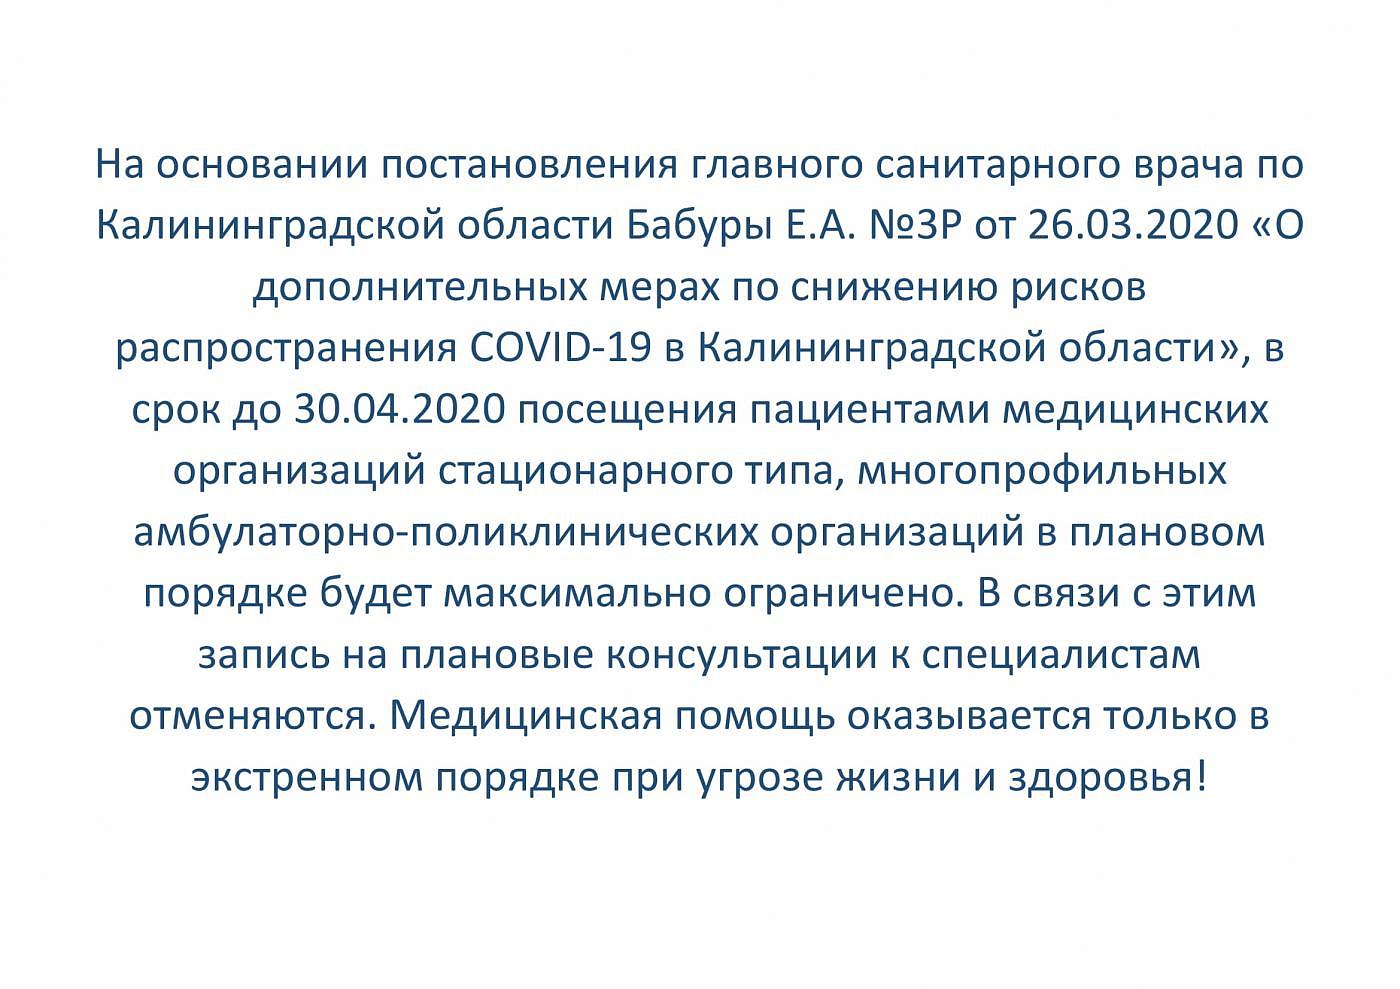 О дополнительных мерах по снижению рисков распространения COVID-19 в Калининградской области